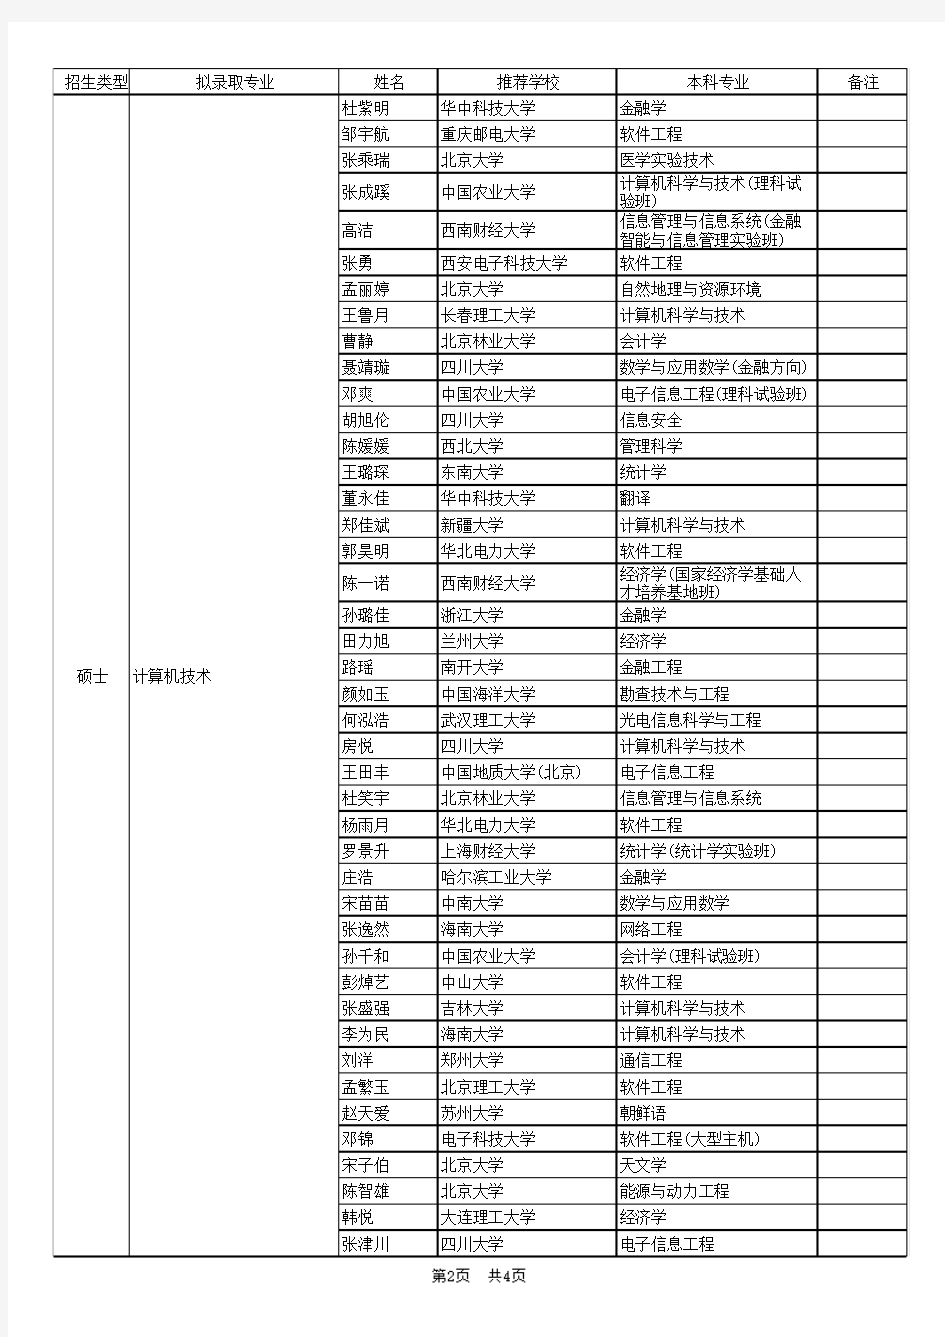 北京大学软件与微电子学院2018年拟接收推荐免试研究生公示名单